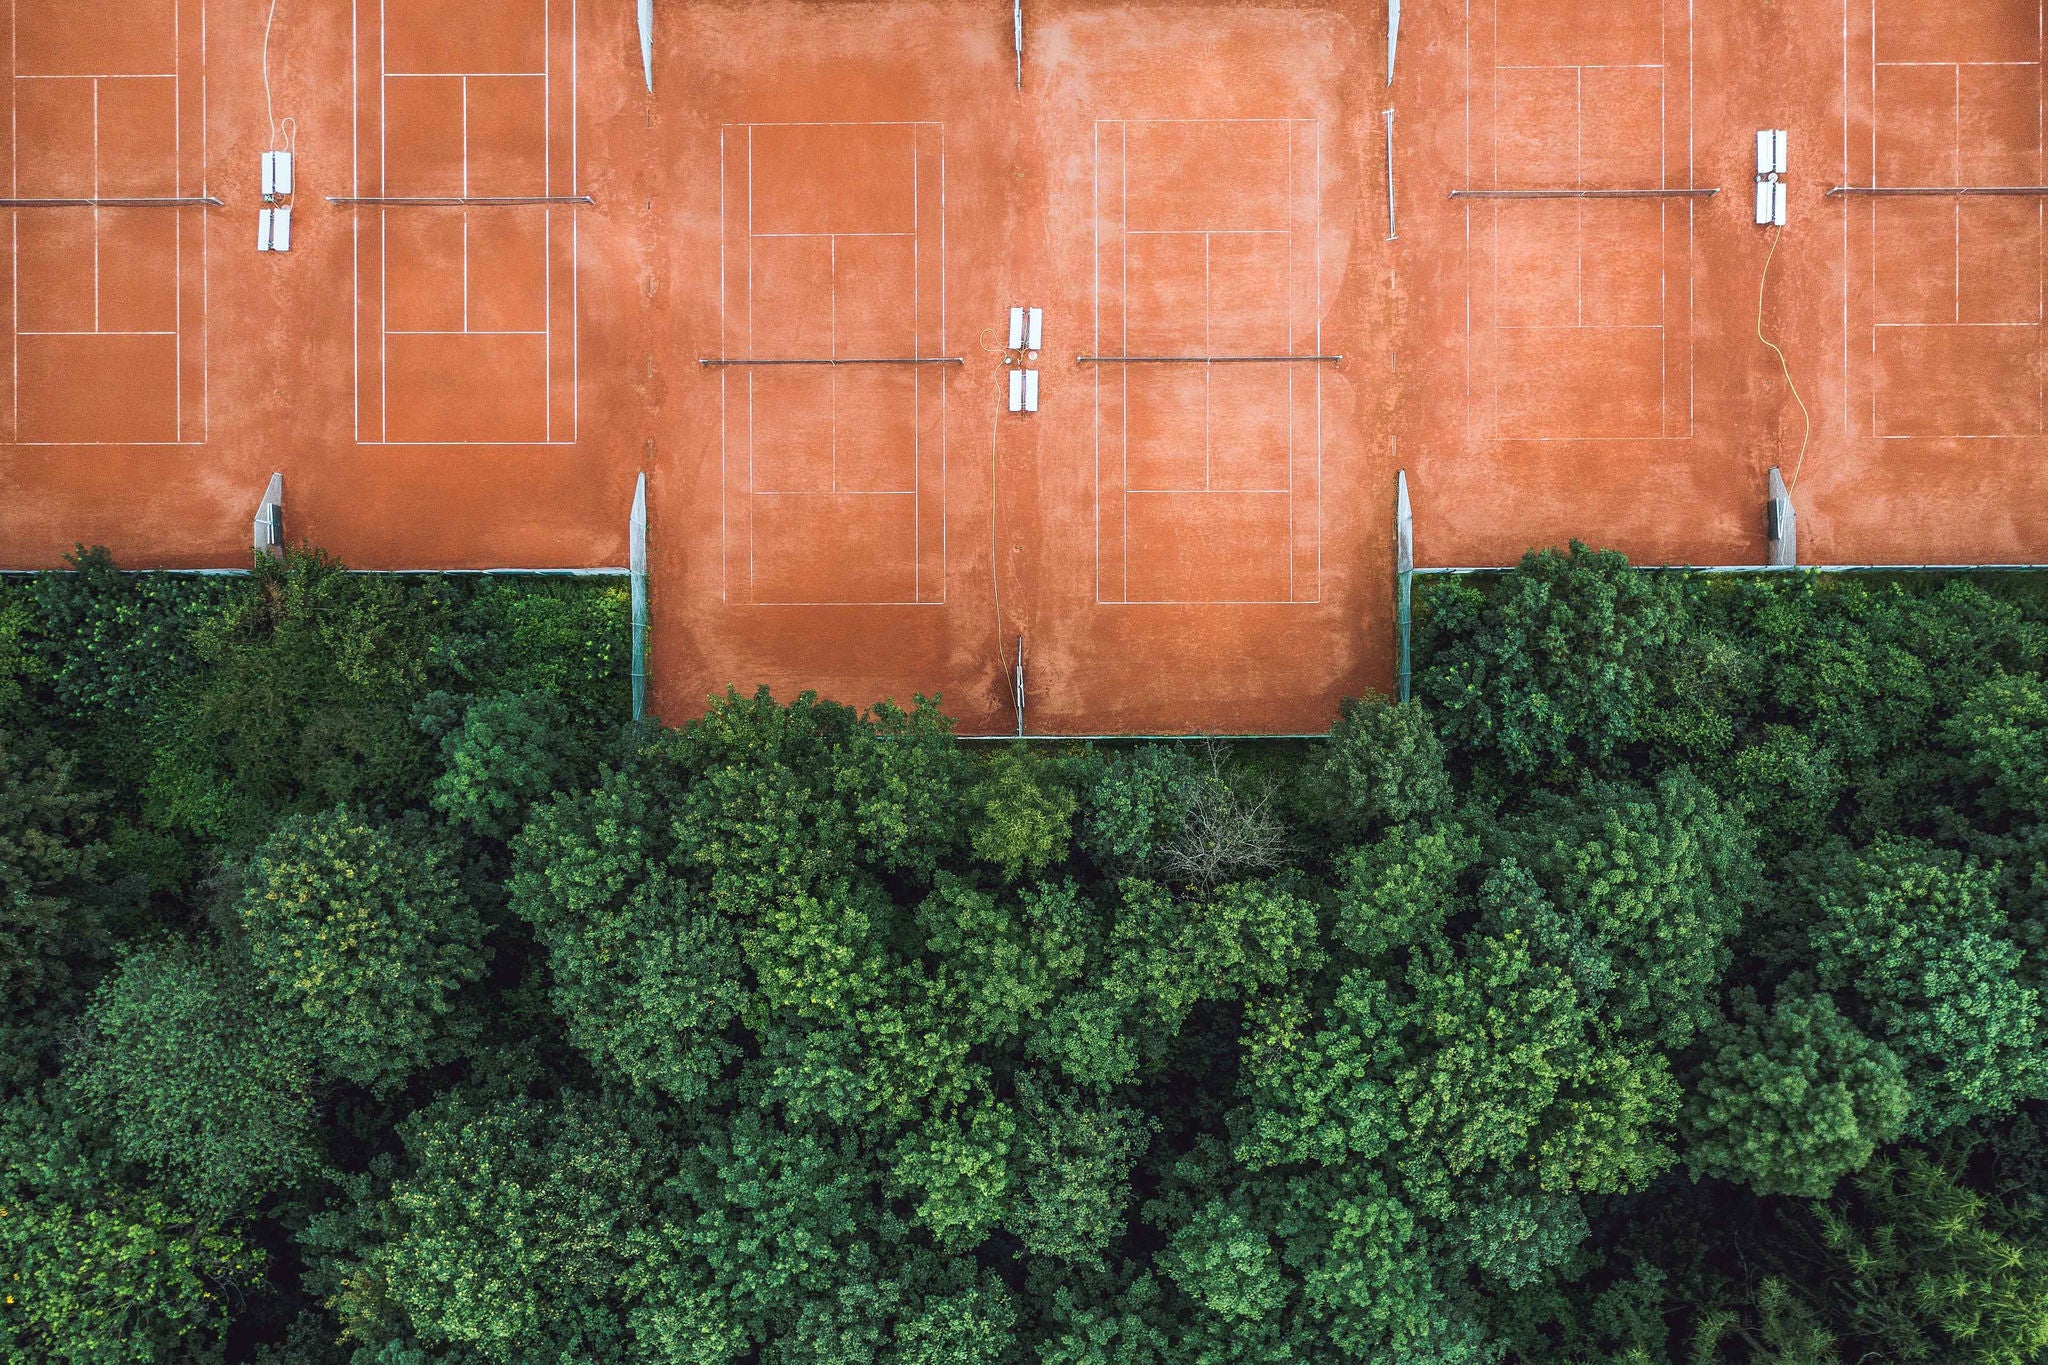 Tennis courts at Marienburger sports club